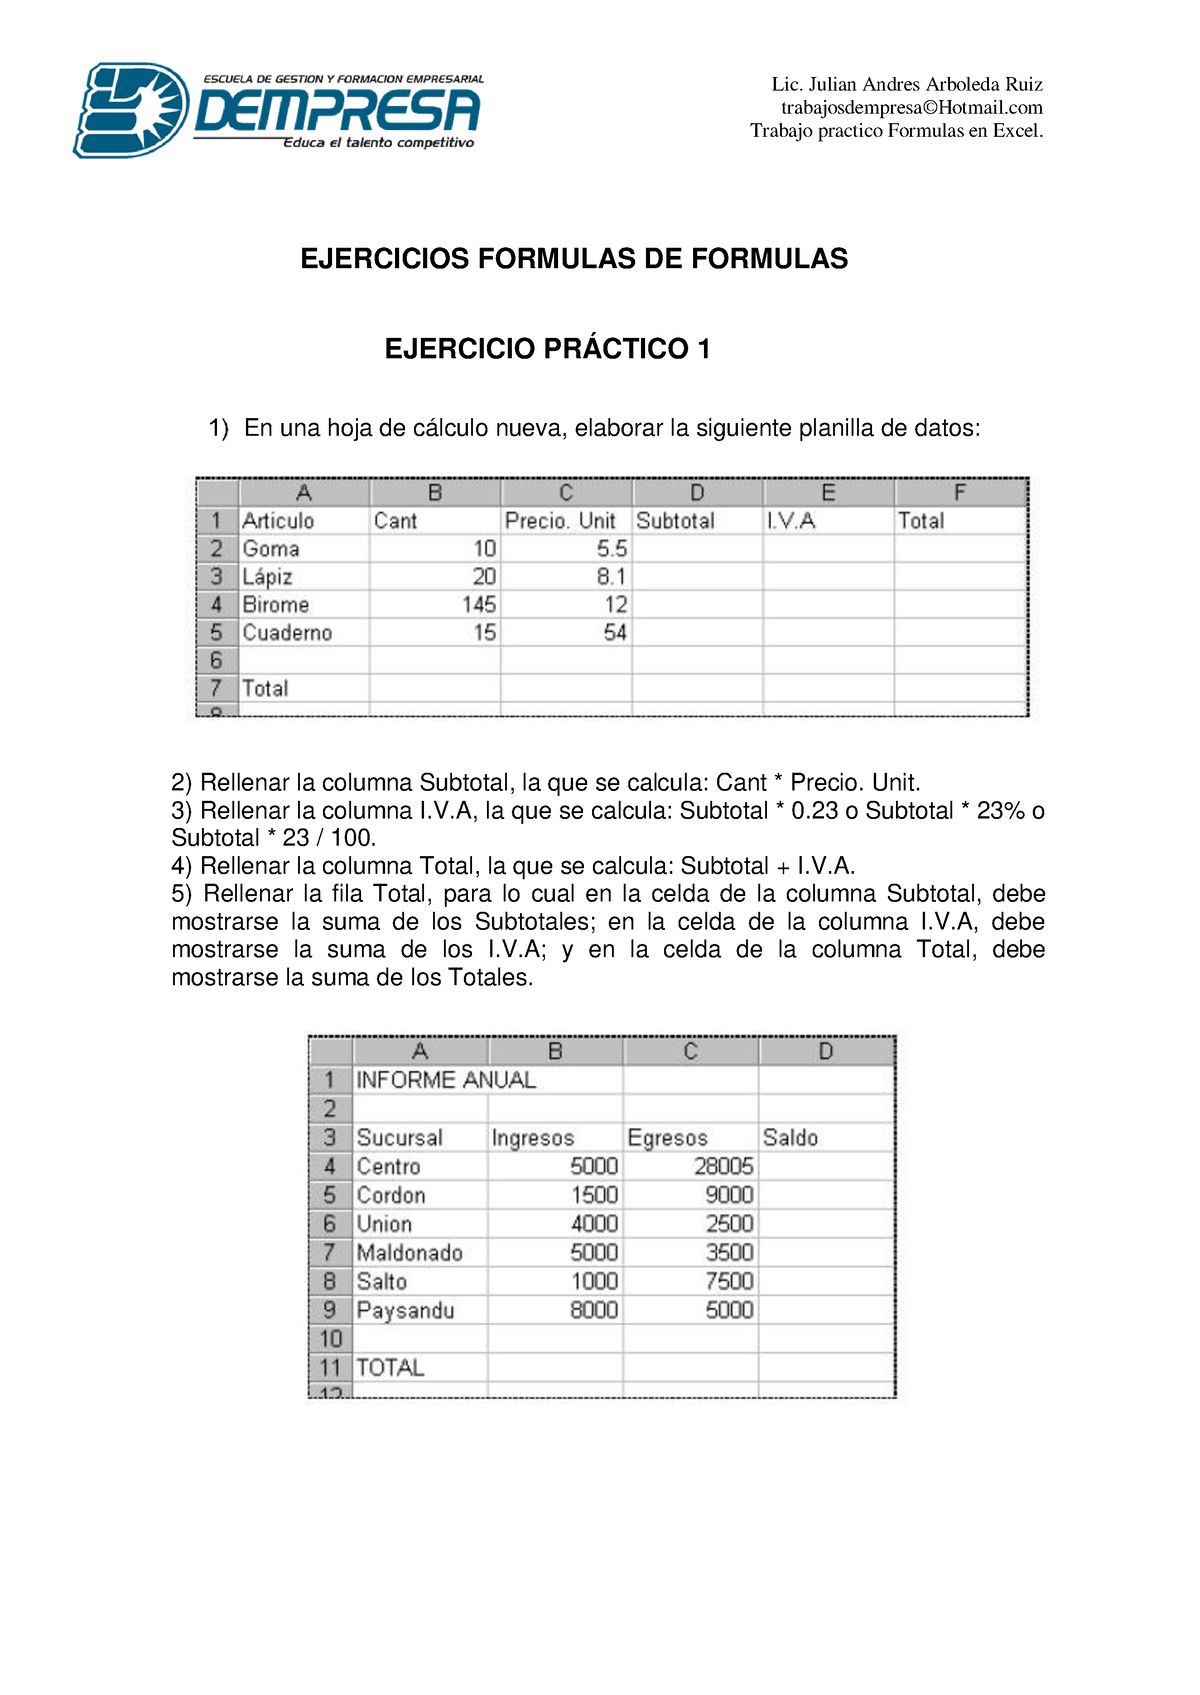 Ejercicios Formulas Basicas En Excel Lic Julian Andres Arboleda Ruiz Trabajosdempresa©hotmail 3929